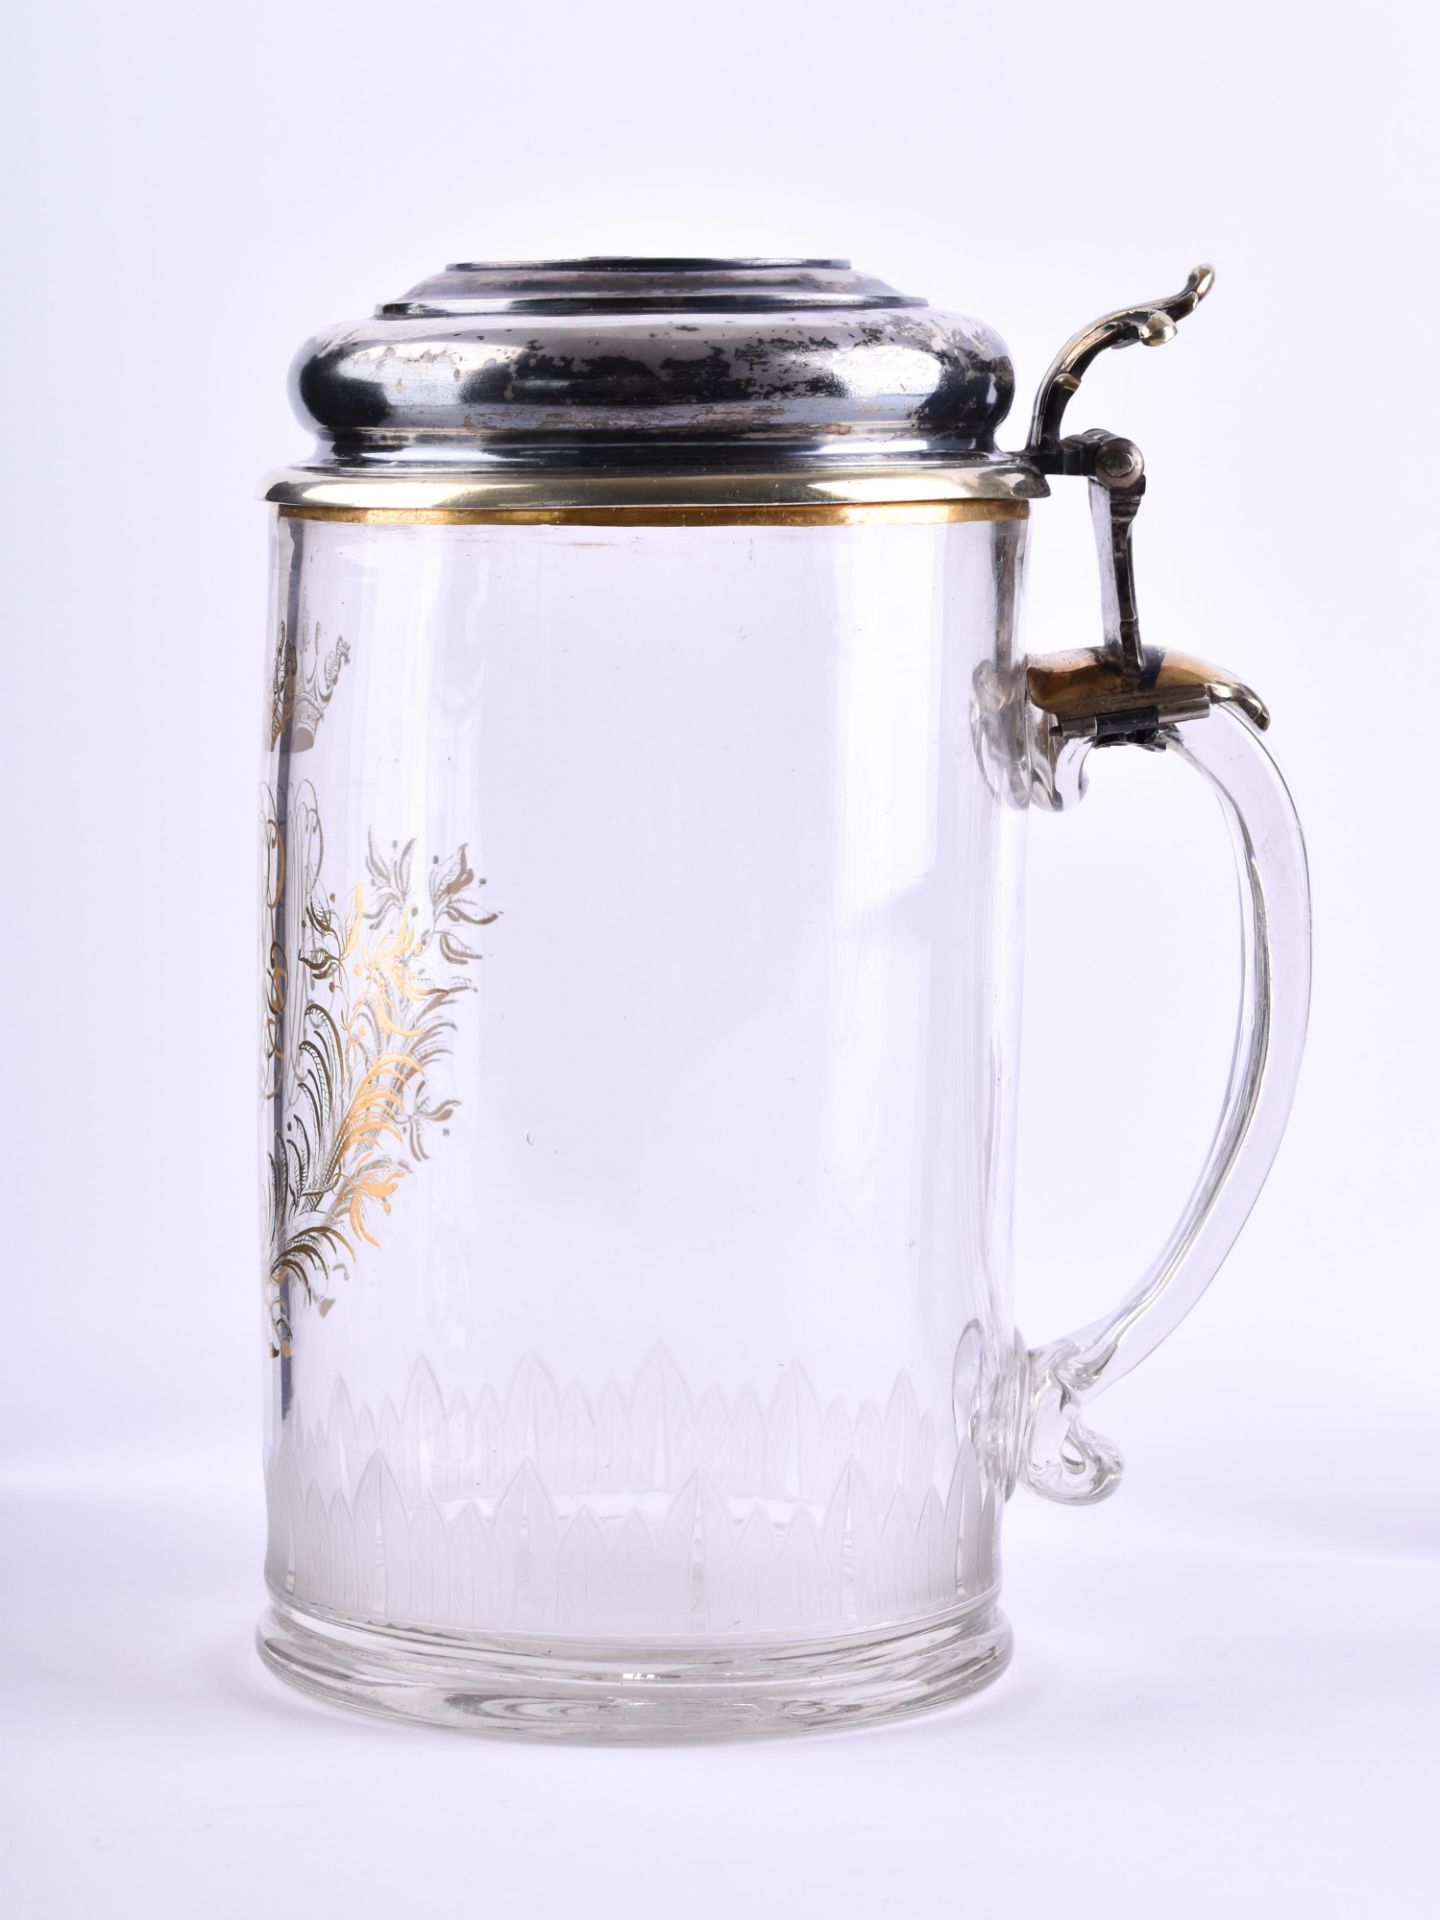 Wedding jug 17th century - Image 3 of 7